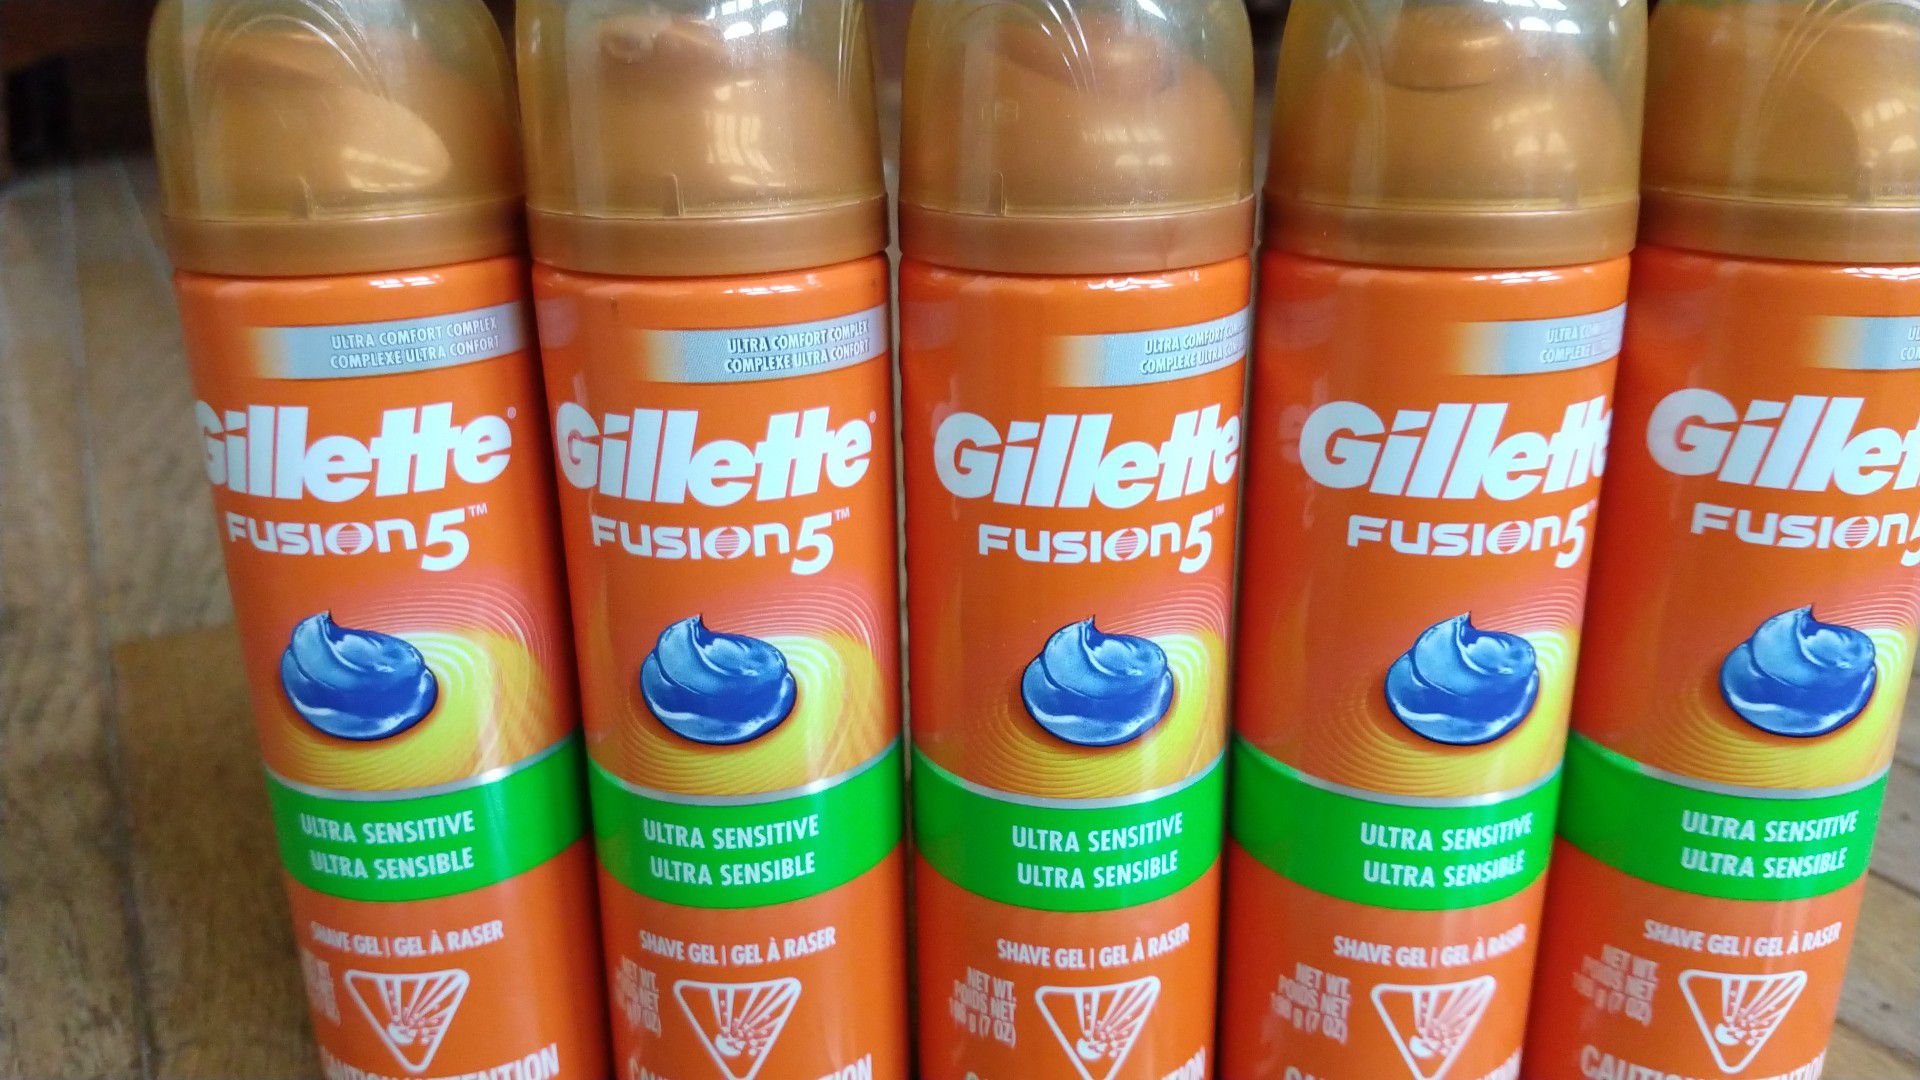 Gillette Fusion5 shave gel